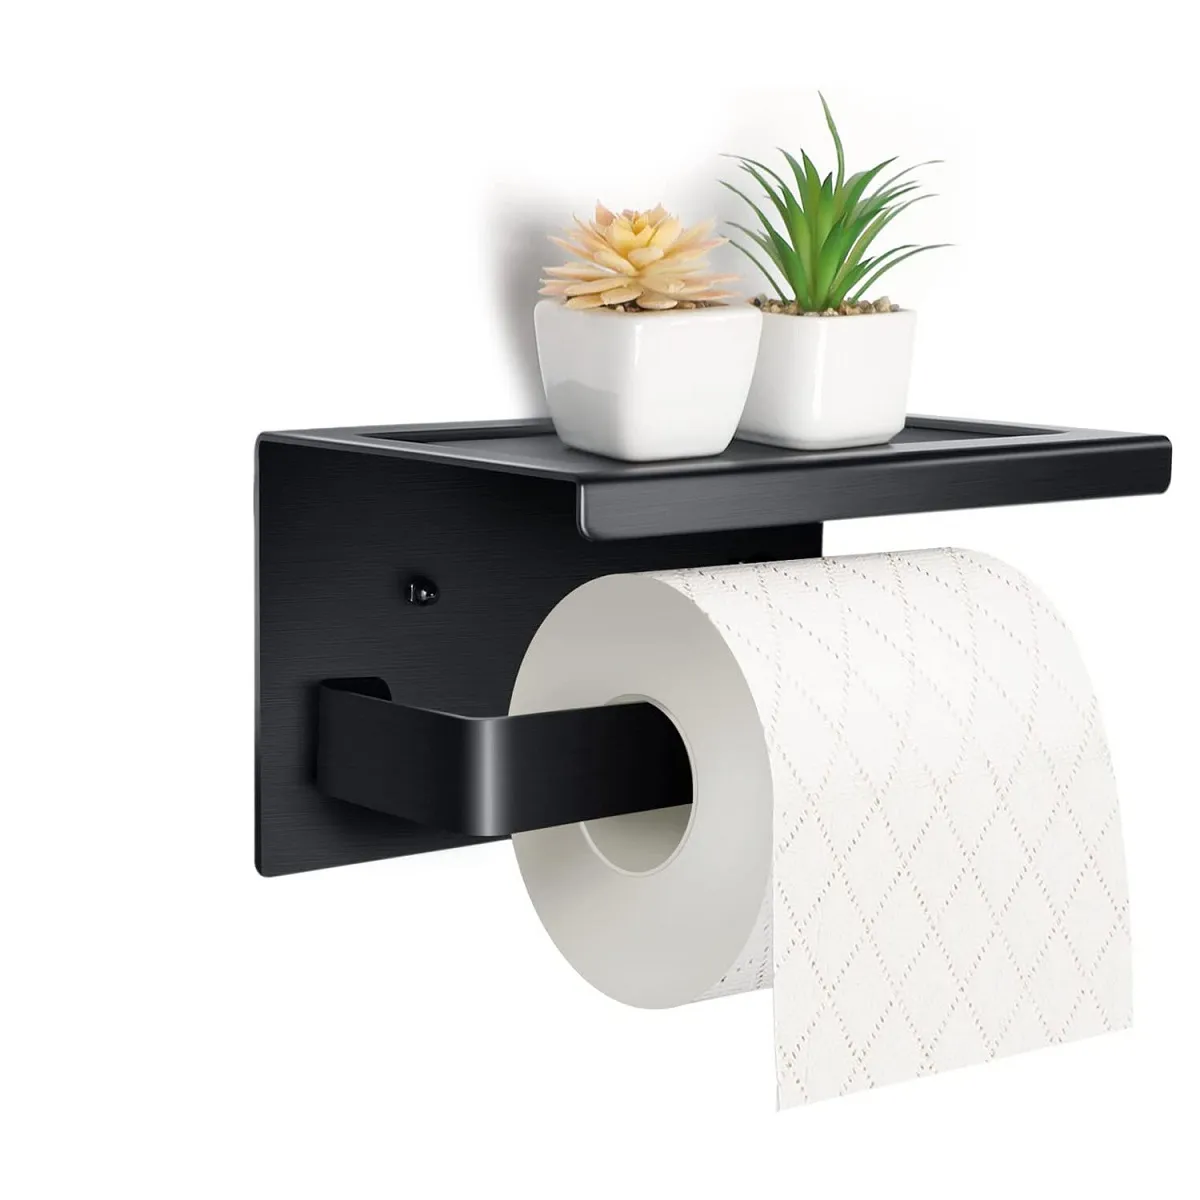 Rostfritt stål Punch-fria toalettlådor Pappershylla badrum kök väggmonterad klibbig förvaringslåda rullarhållare HH22-296